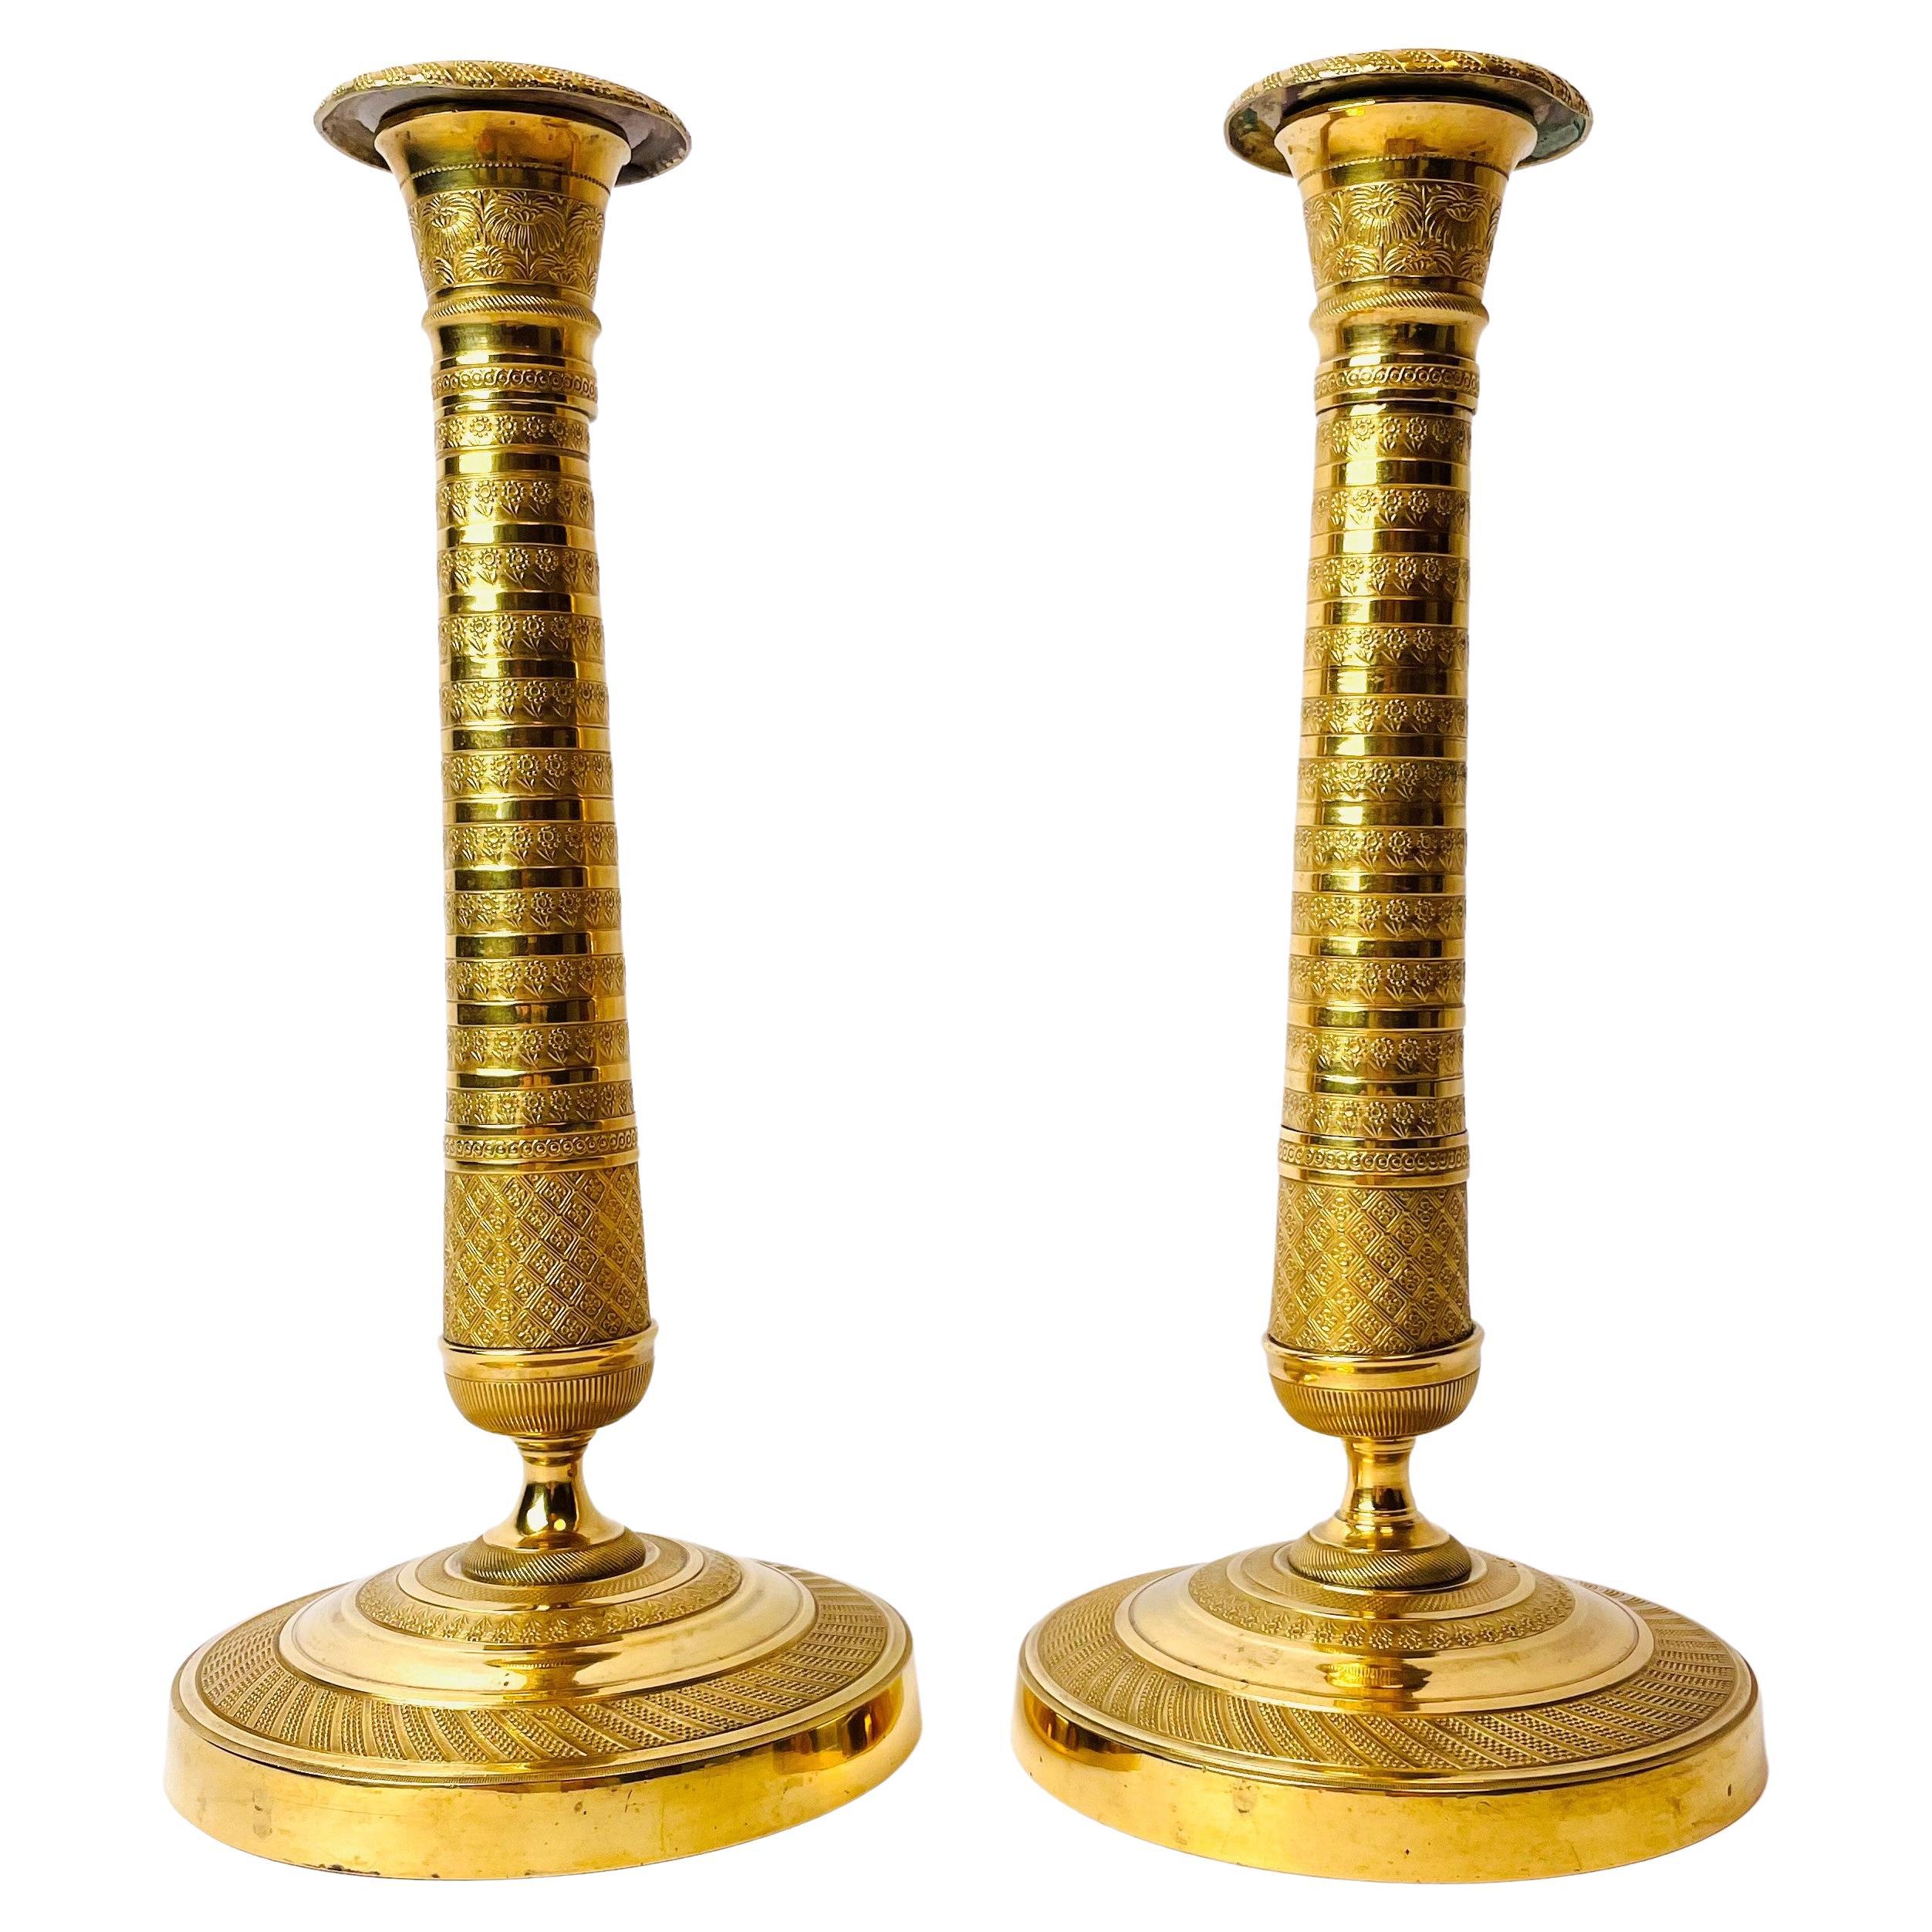 Paire de bougeoirs du début du XIXe siècle en bronze doré, style Empire français